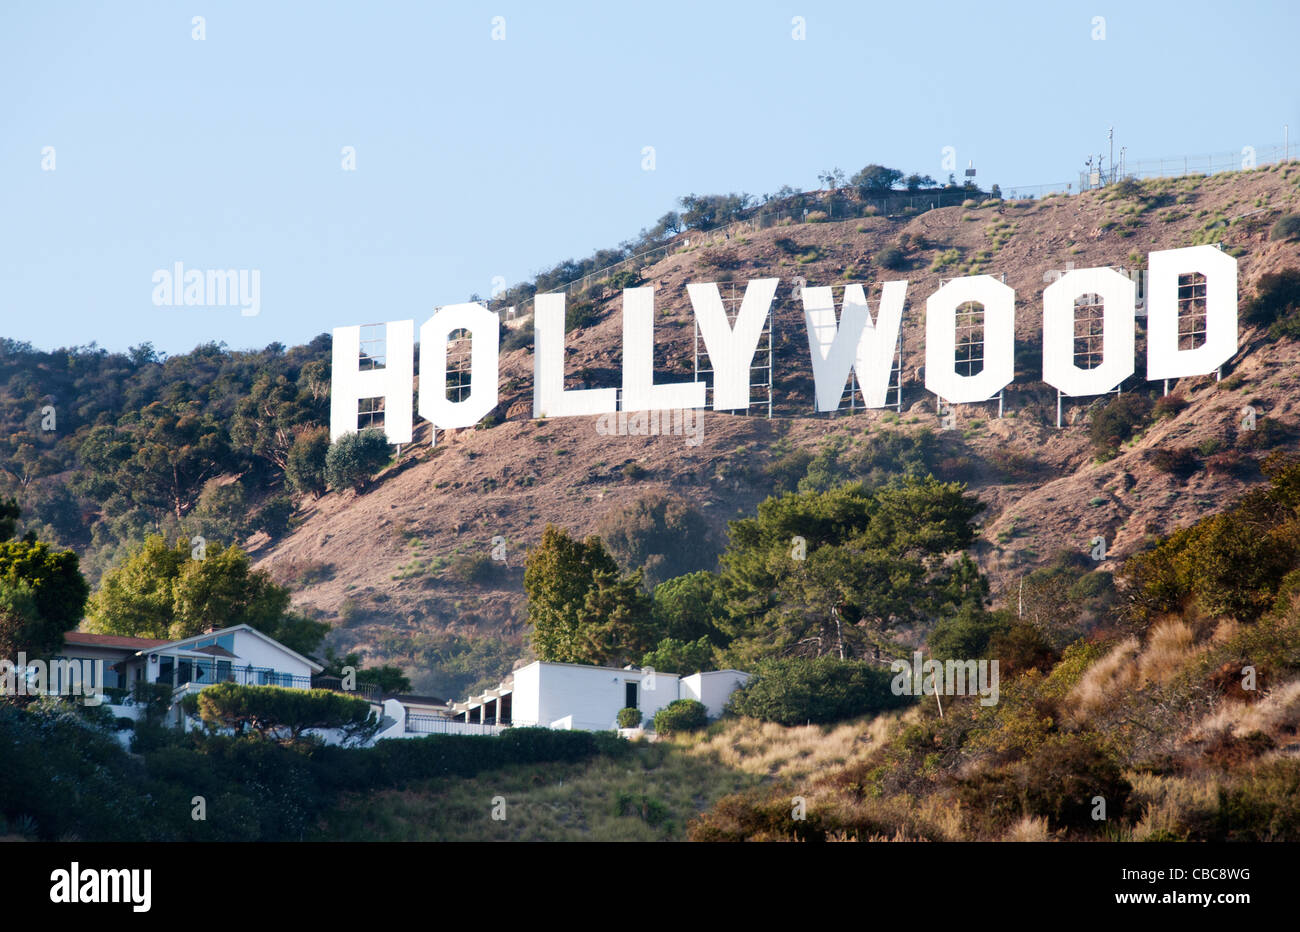 El cartel de Hollywood Hollywood Hills de Griffith Observatory Los Angeles California Estados Unidos Foto de stock